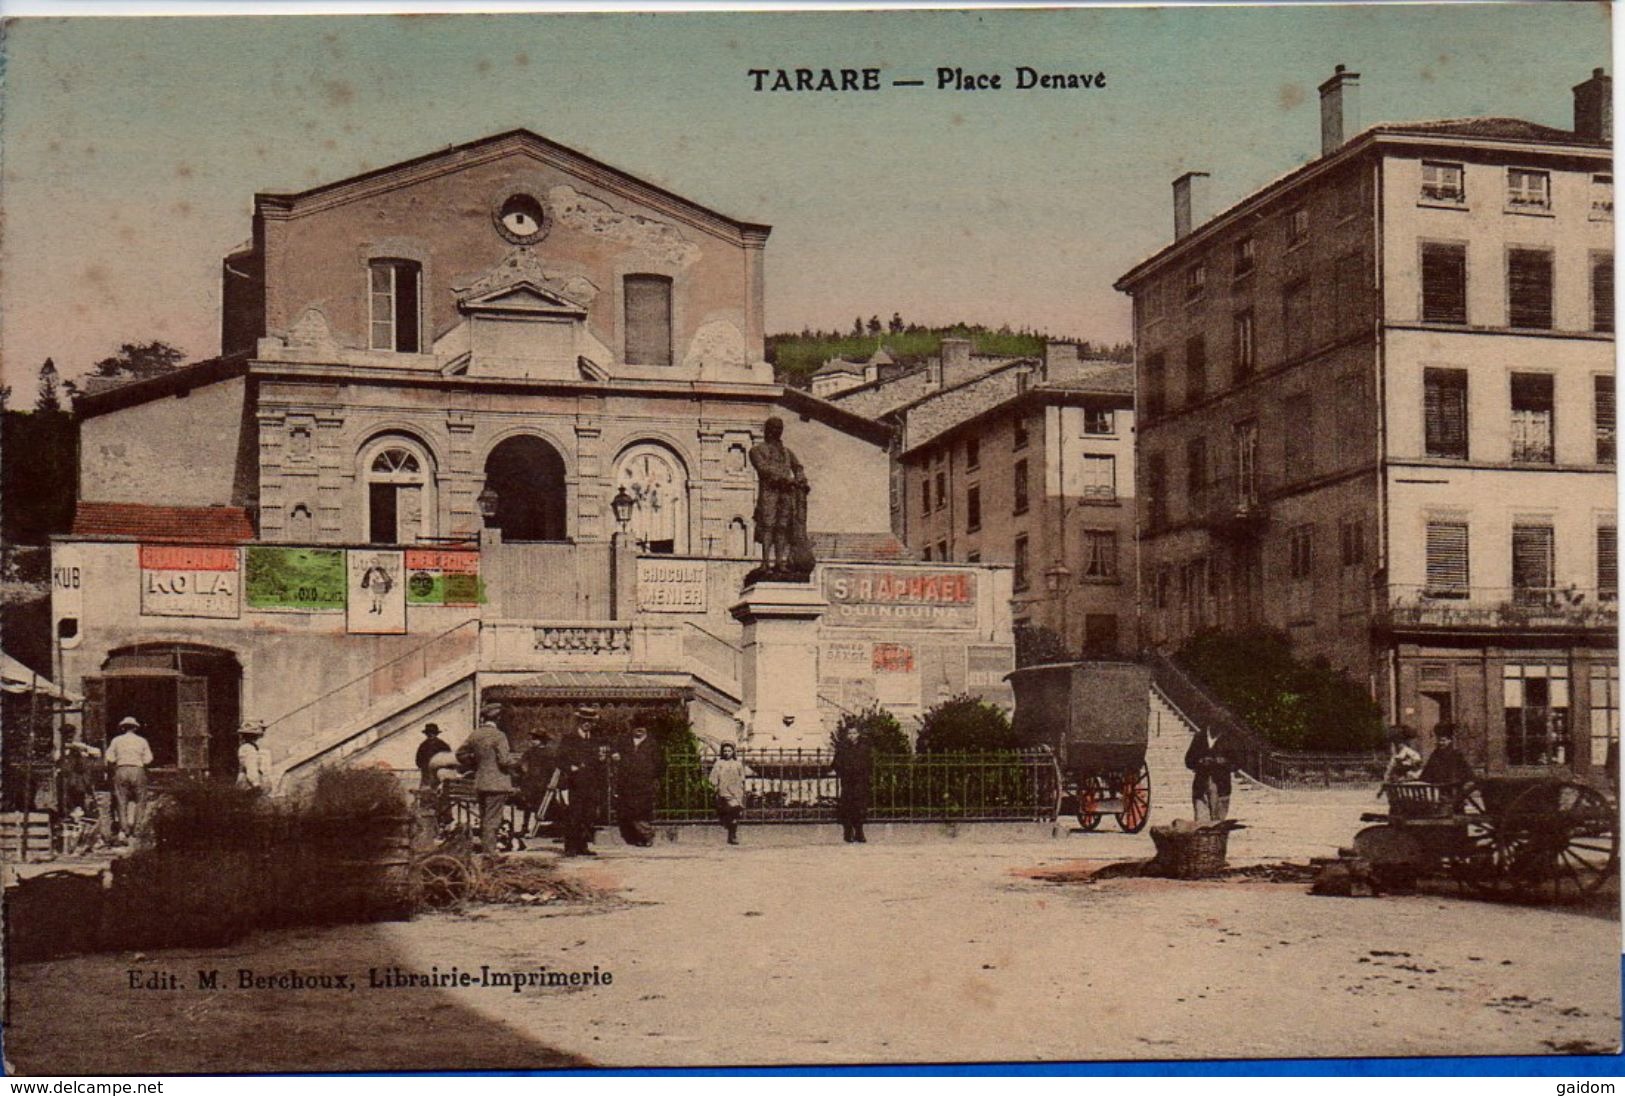 TARARE - Place Denave (animée - Charette - Publicités ST RAPHAEL QUINQUINA, KUB, KOLA, Chocolat MENIER - Marché ?) - Tarare